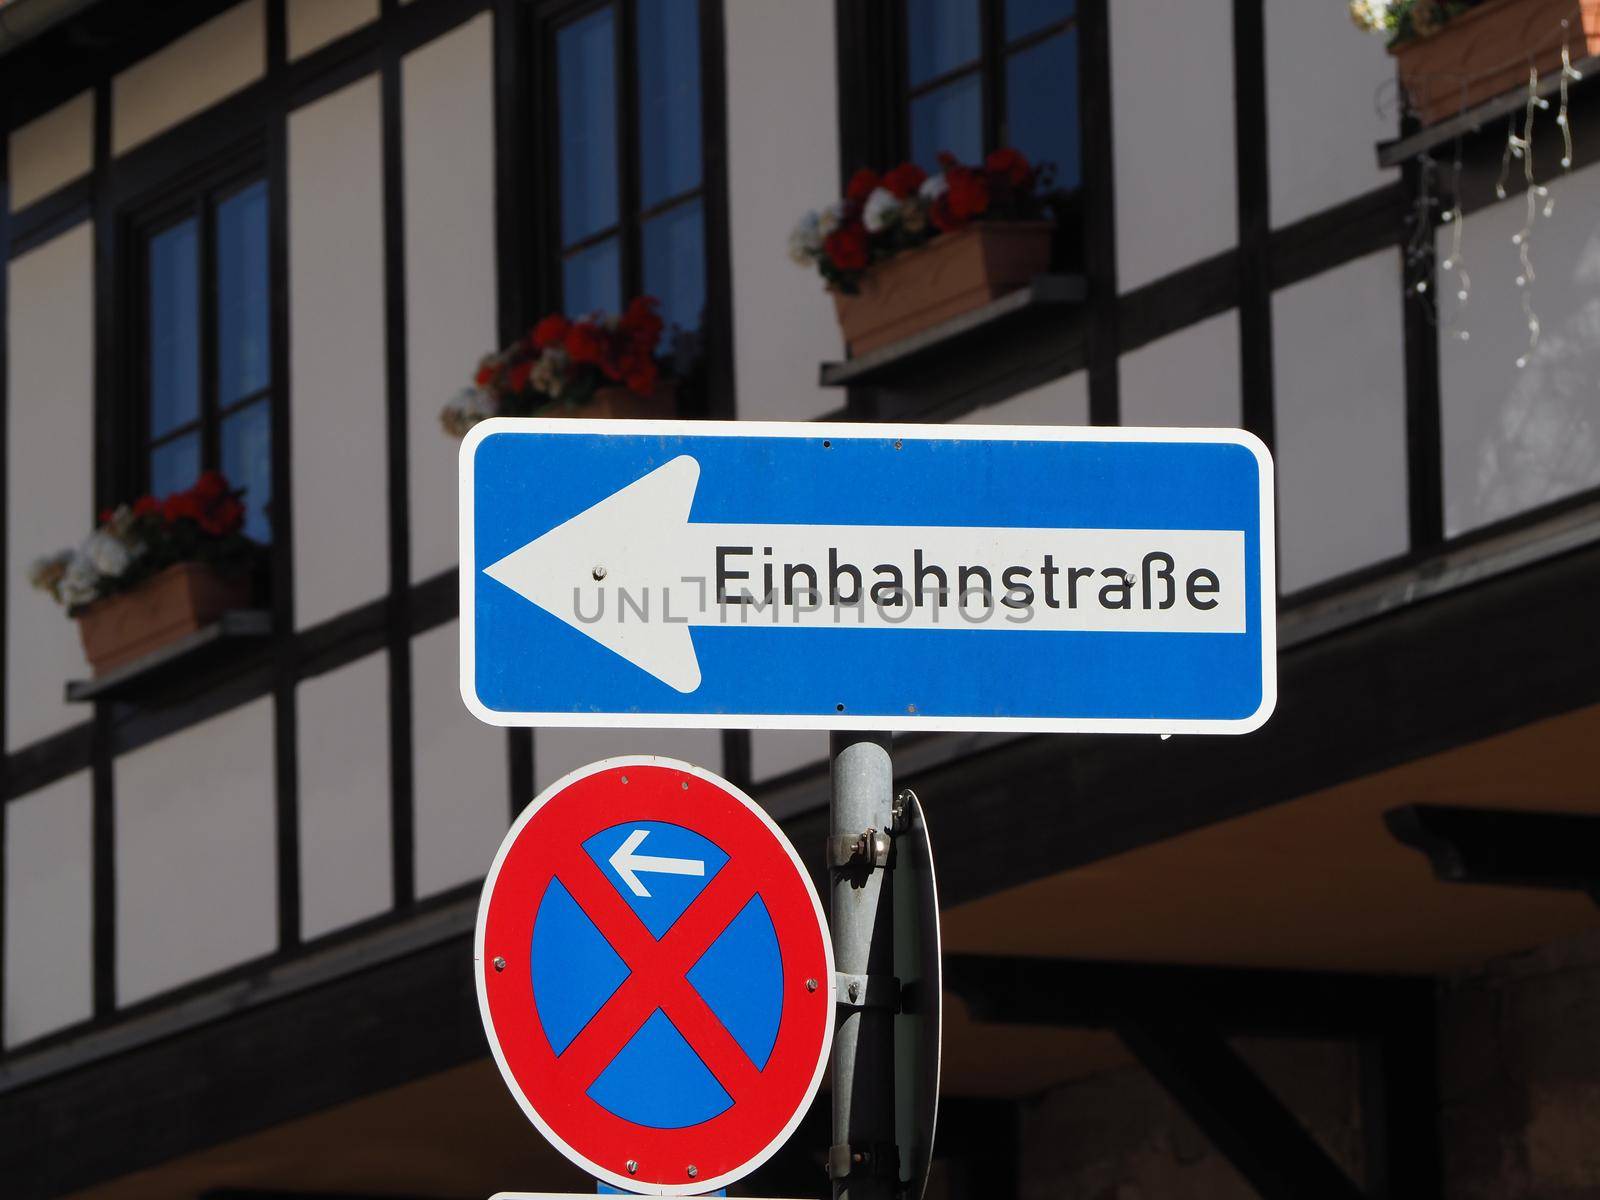 Einbahnstrasse transl. one way street sign by claudiodivizia